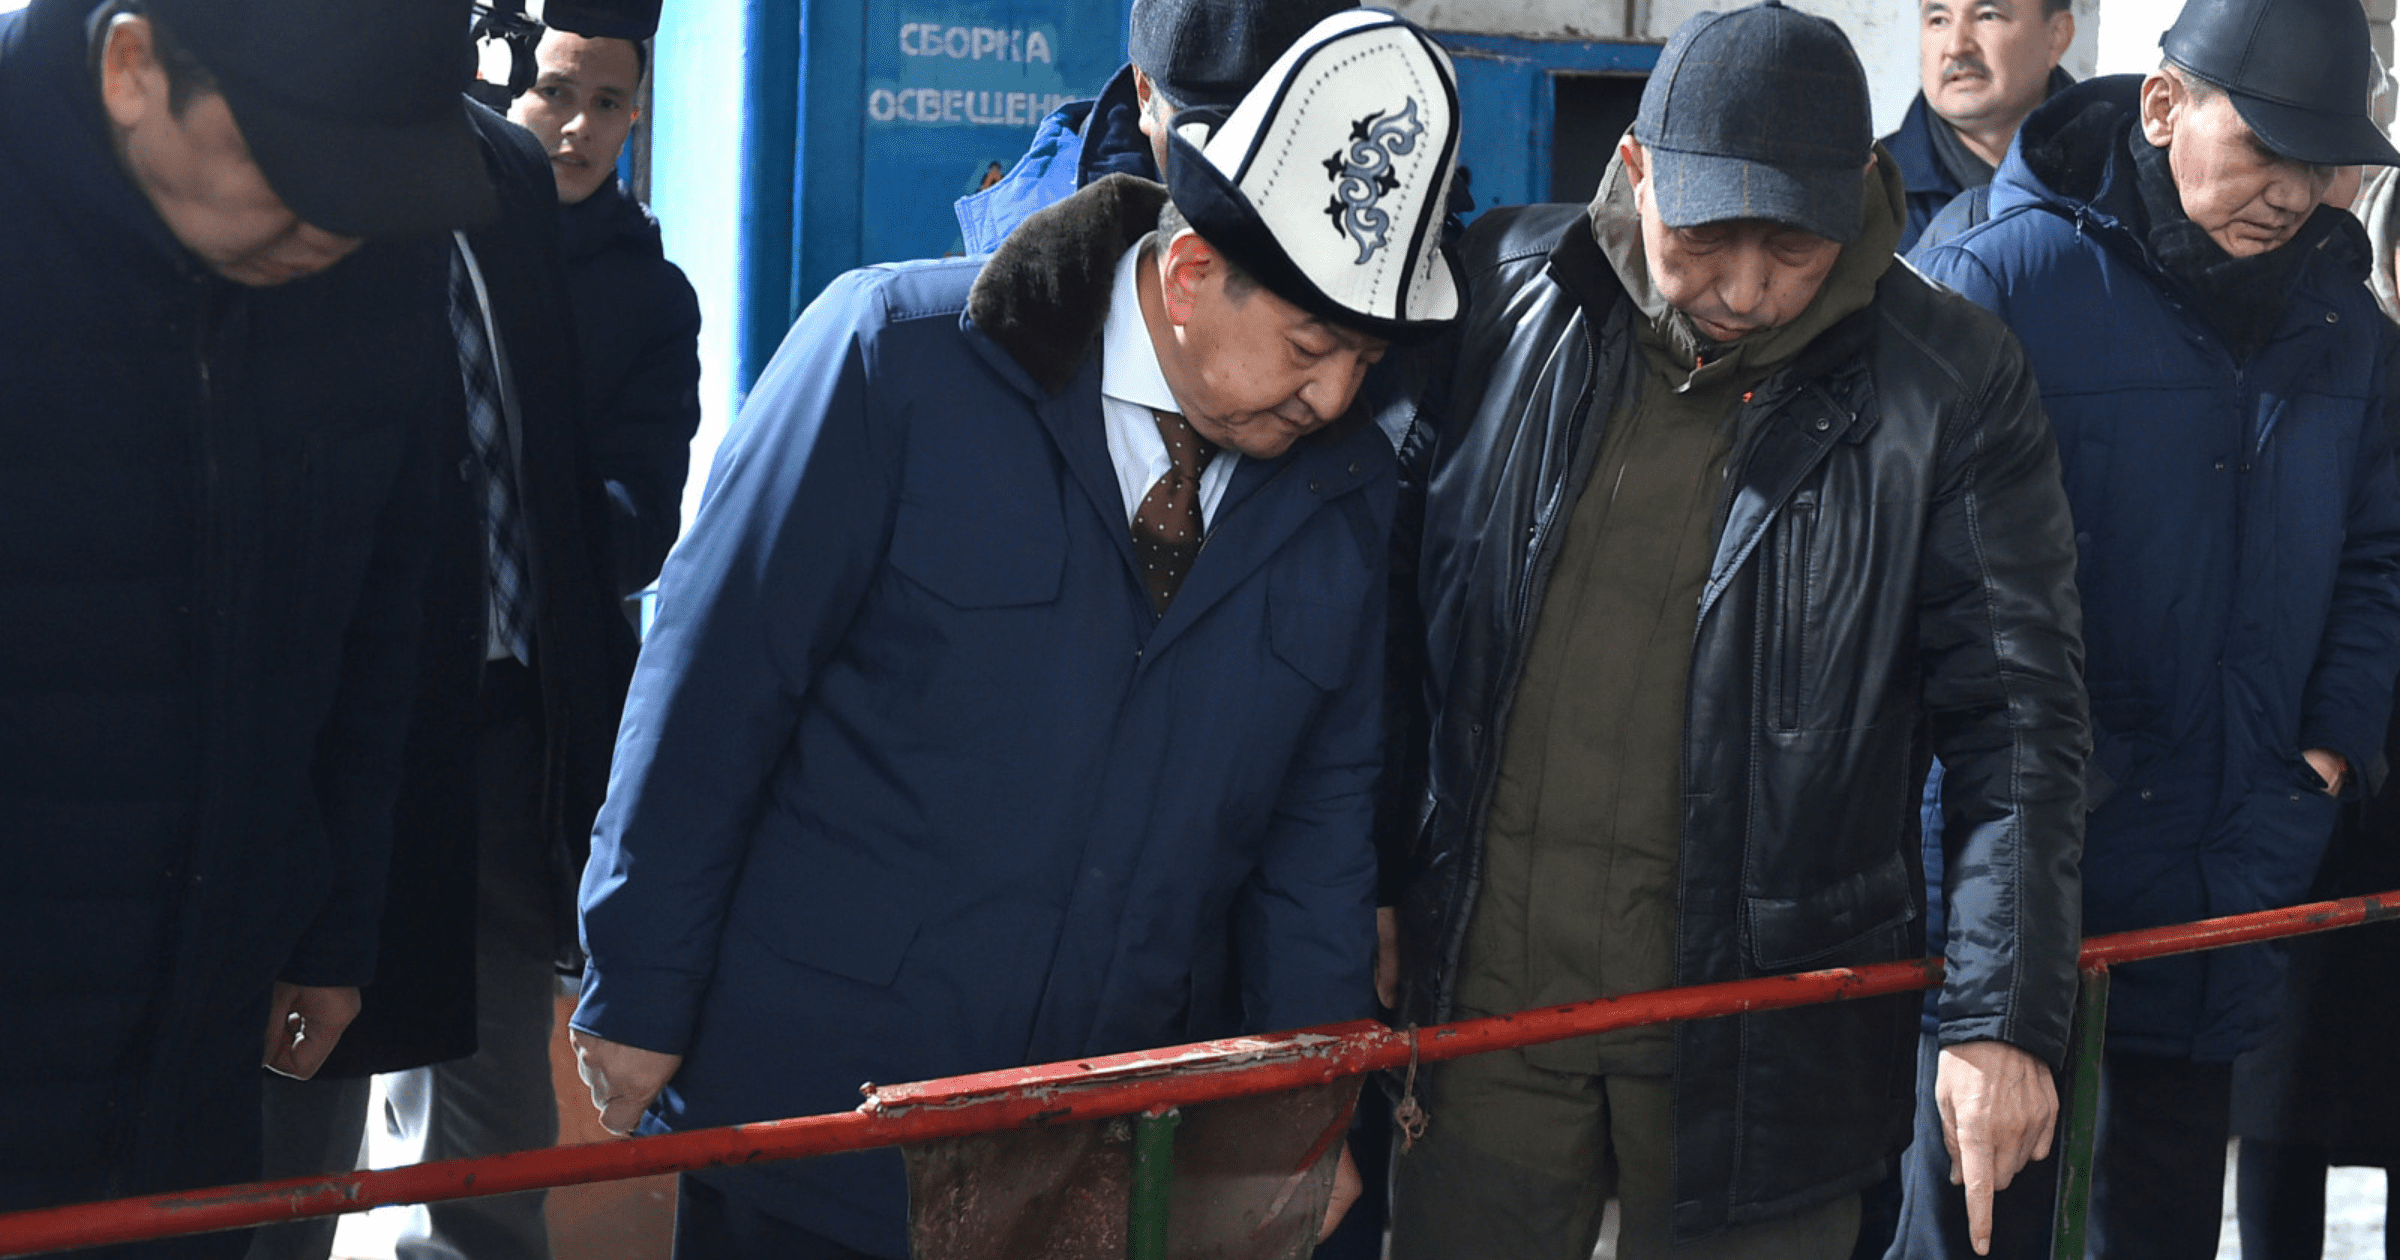 Акылбек Жапаров поручил подготовить список оборудования ТЭЦ Бишкека для замены и обновления